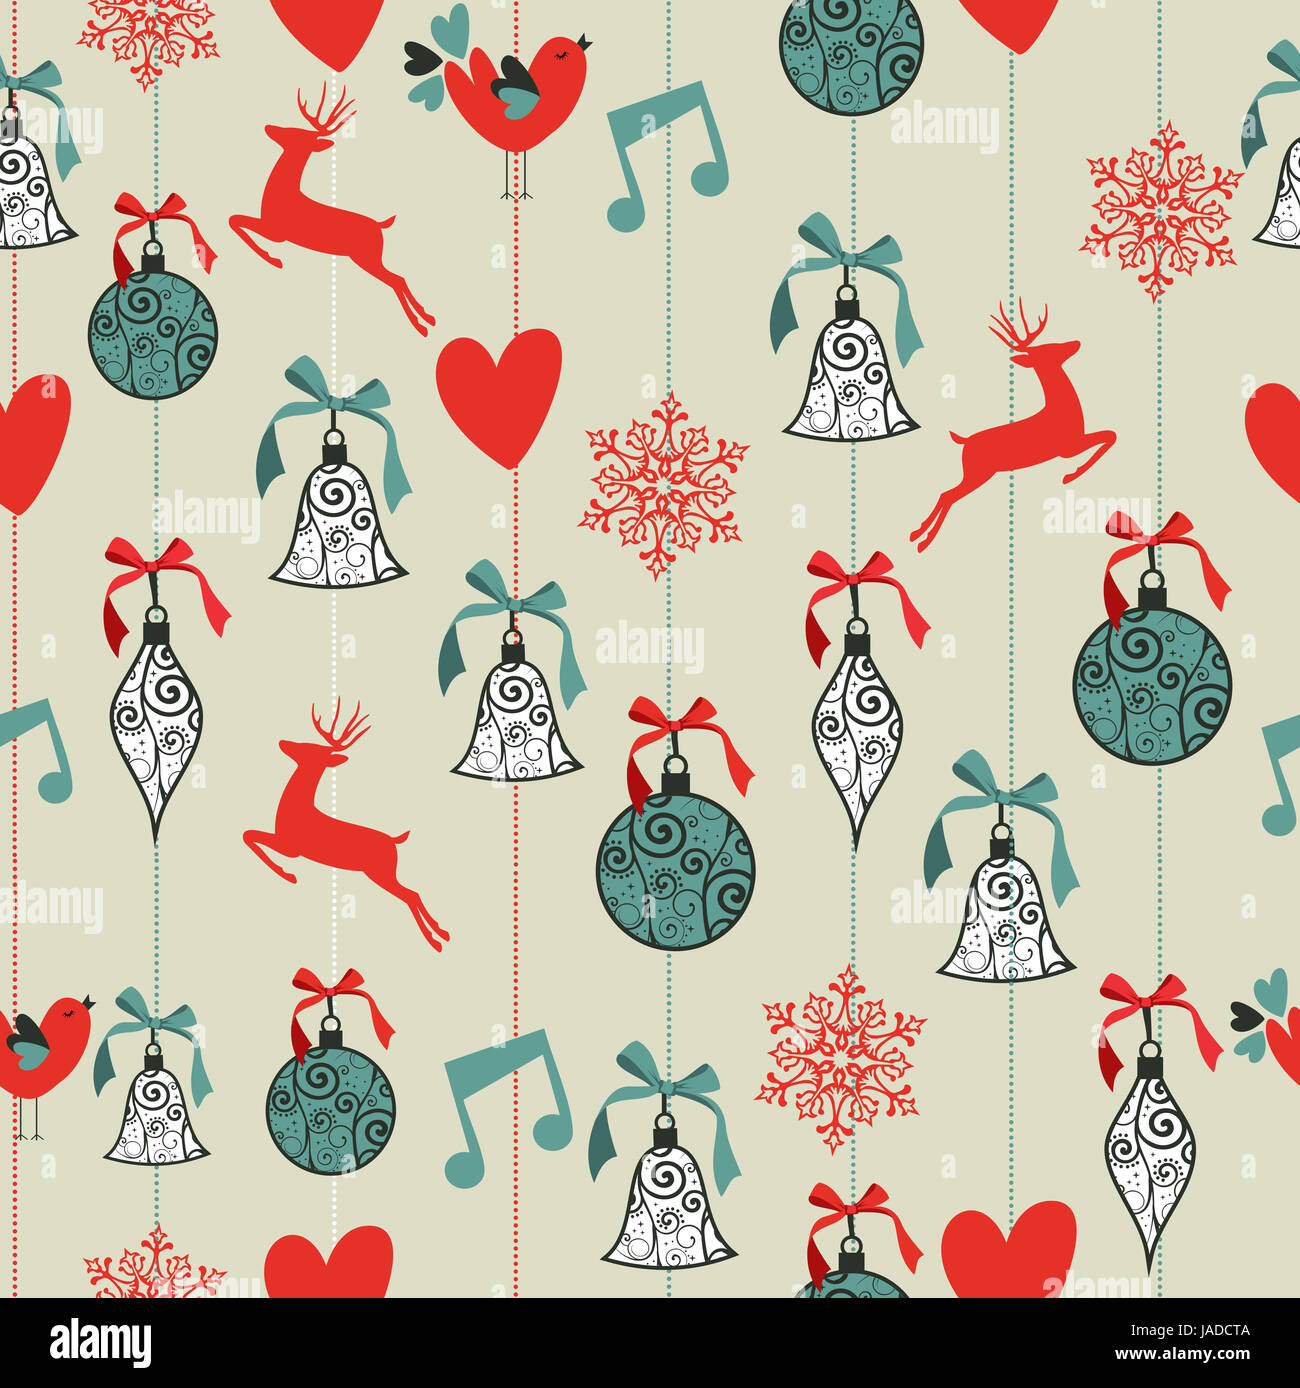 Joyeux Noël Décoration renne et babioles ruban de fond transparent. Fichier vecteur organisé en couches pour l'édition facile. Banque D'Images